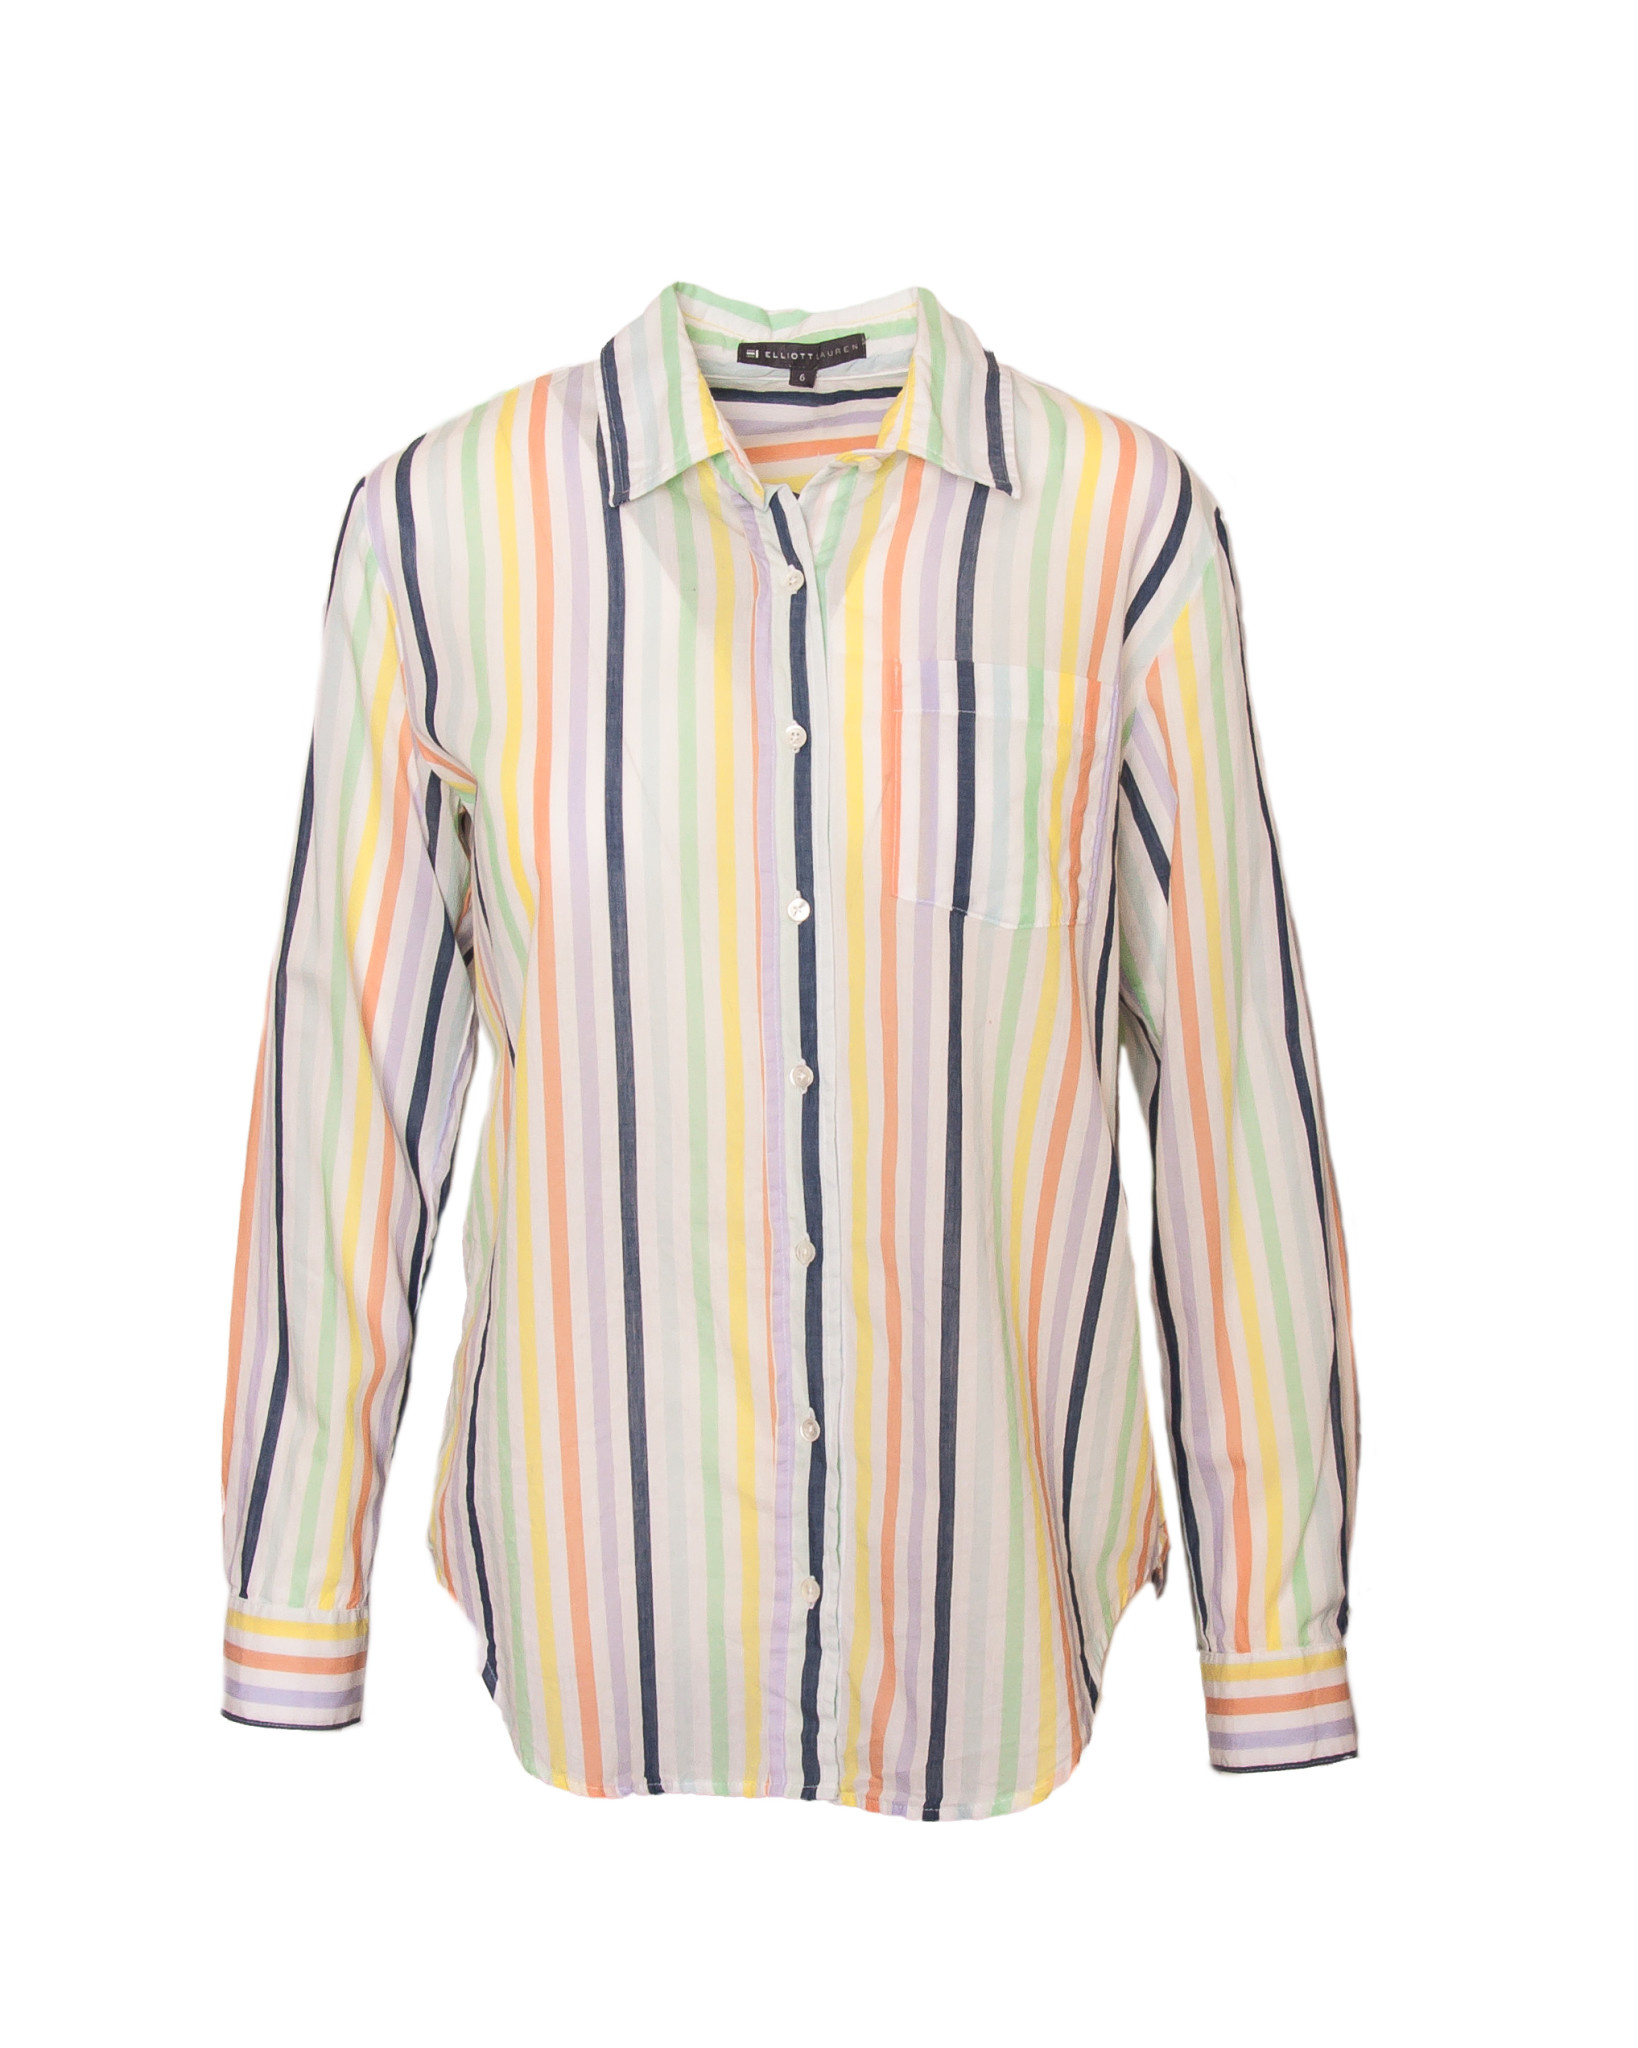 ELLIOTT LAUREN Over the Rainbow Shirt, 87337 - Touch of Class